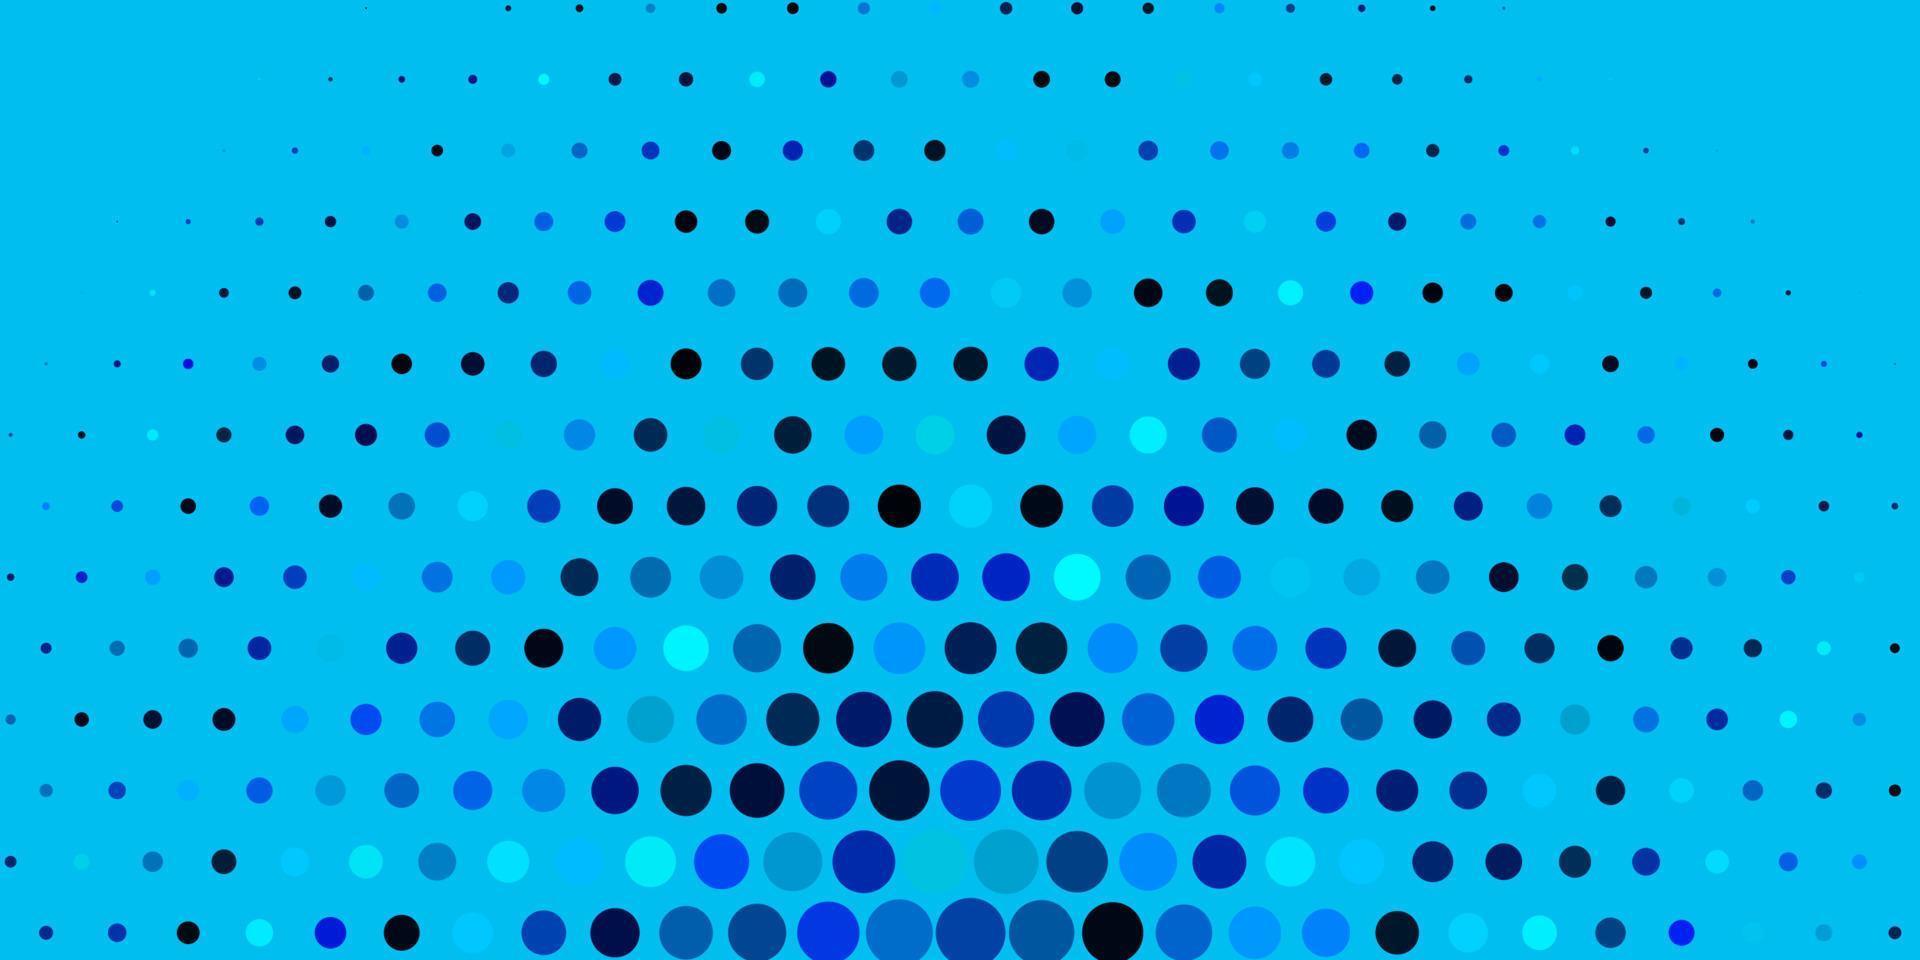 diseño de vector azul oscuro con formas circulares.